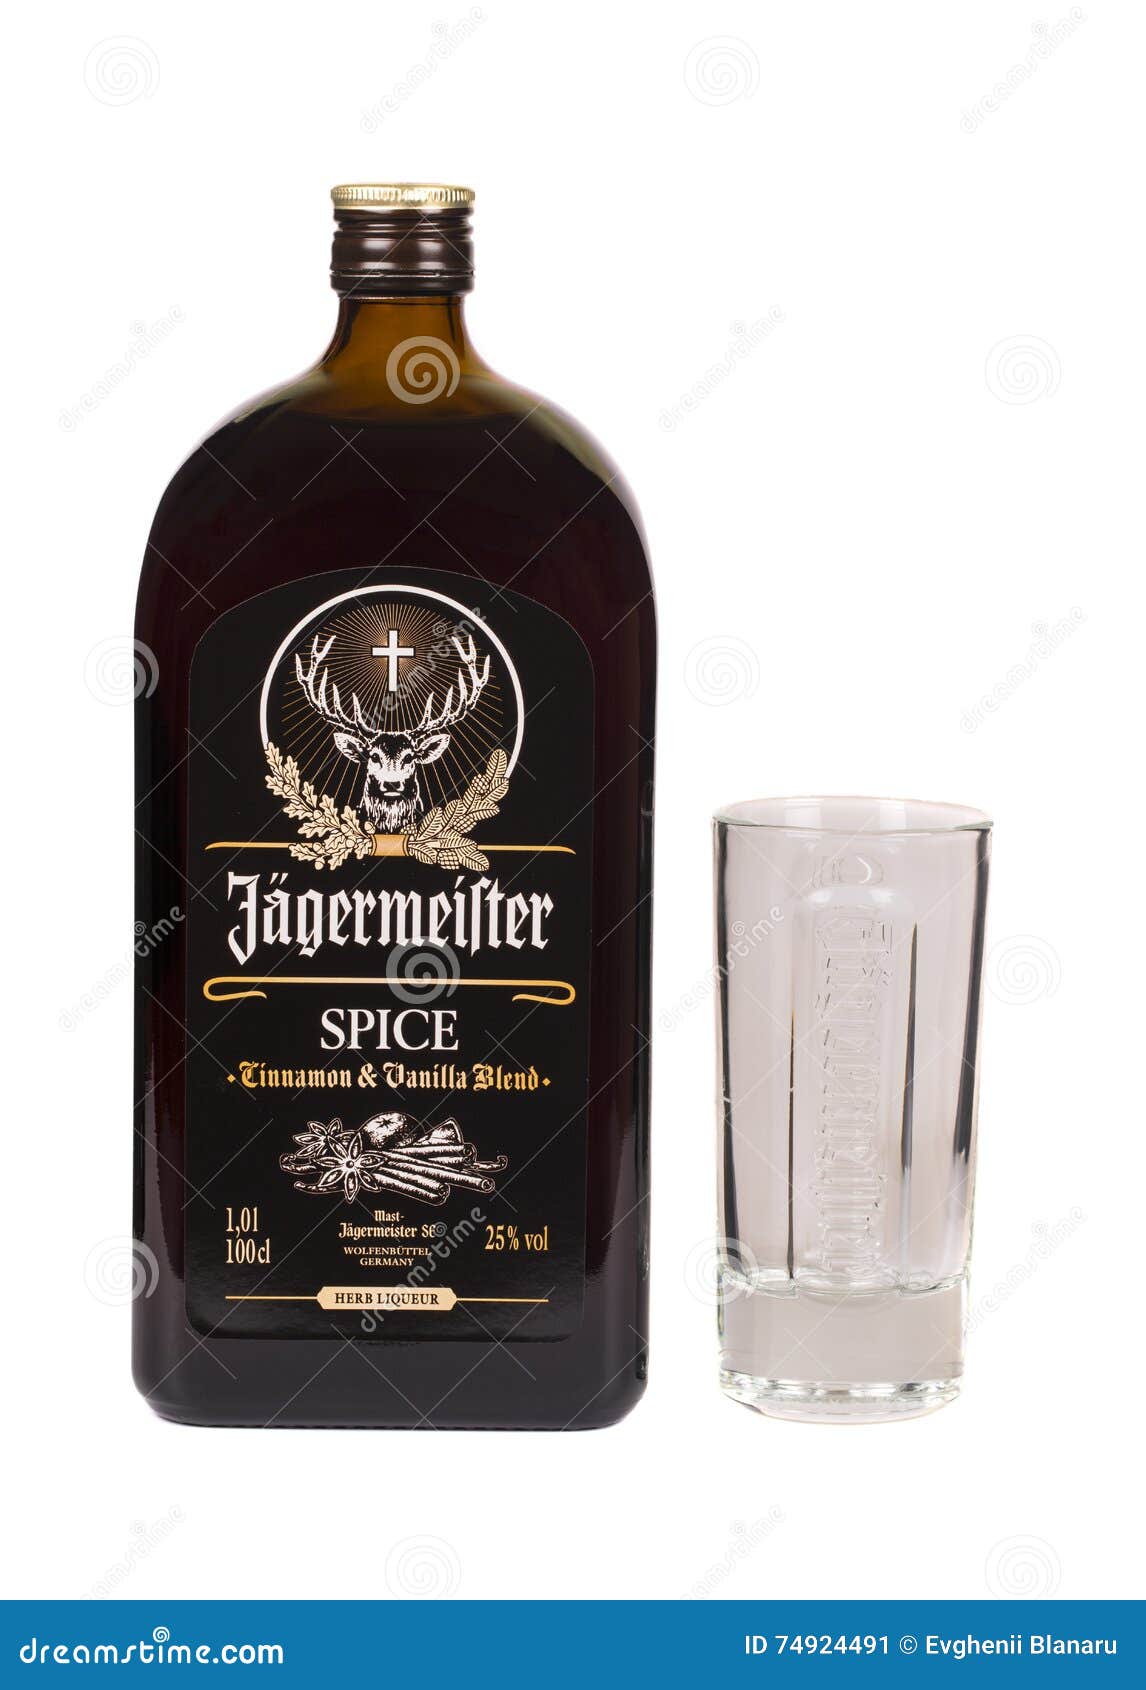 LECTURE MOLDAU LE 7 AVRIL 2016 : Bouteille en verre de boisson alcoolisée d'obscurité d'épice de Jagermeister Jagermeister est un digestif allemand fait avec des herbes et des épices